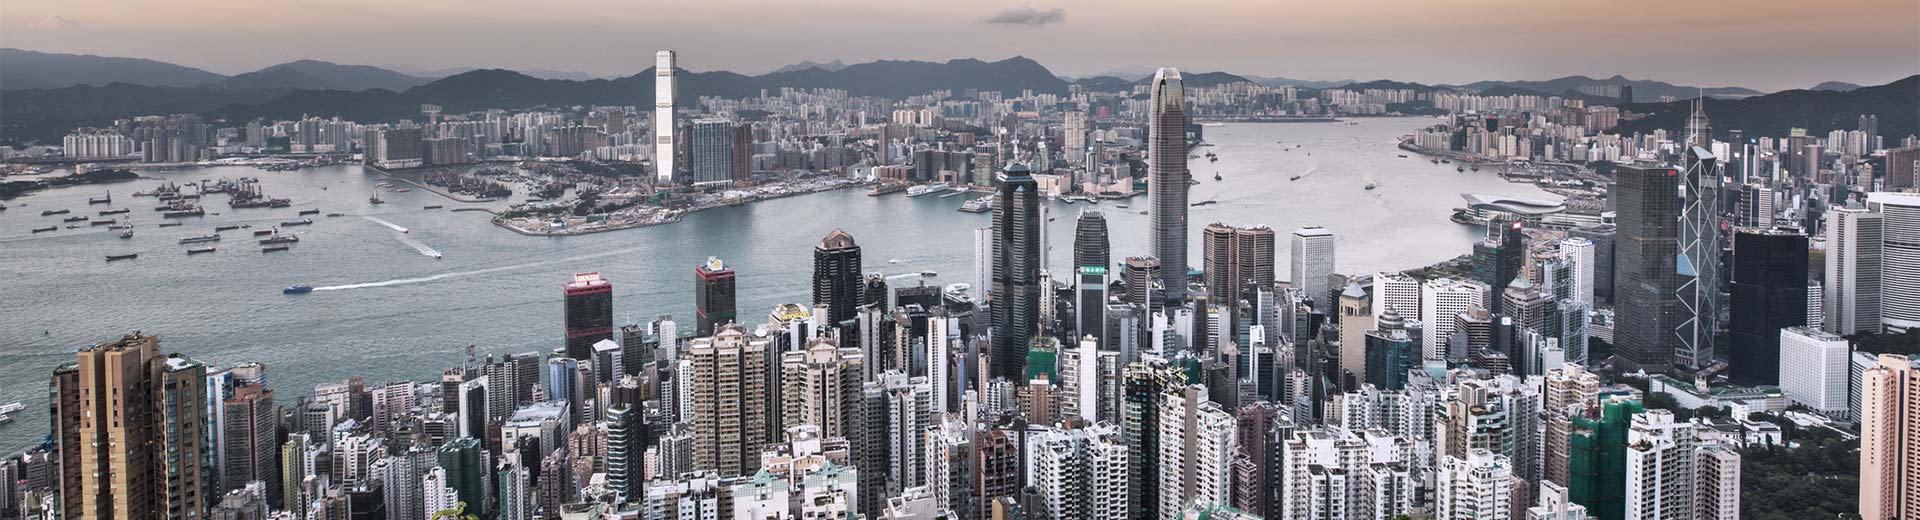 La masse tentaculaire de gratte-ciel dans la célèbre ville de Hong Kong par une journée grise.